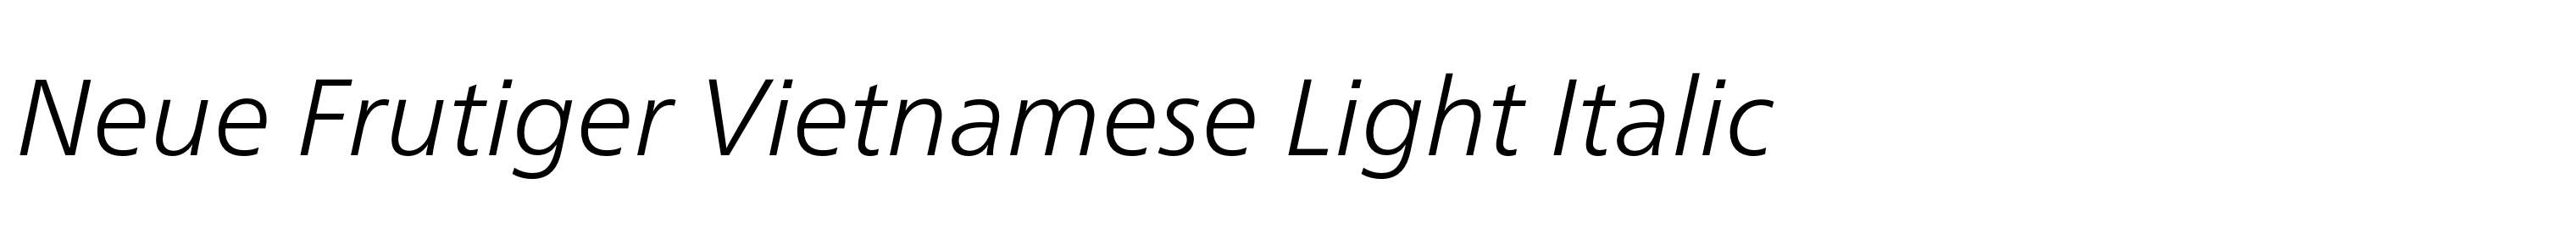 Neue Frutiger Vietnamese Light Italic